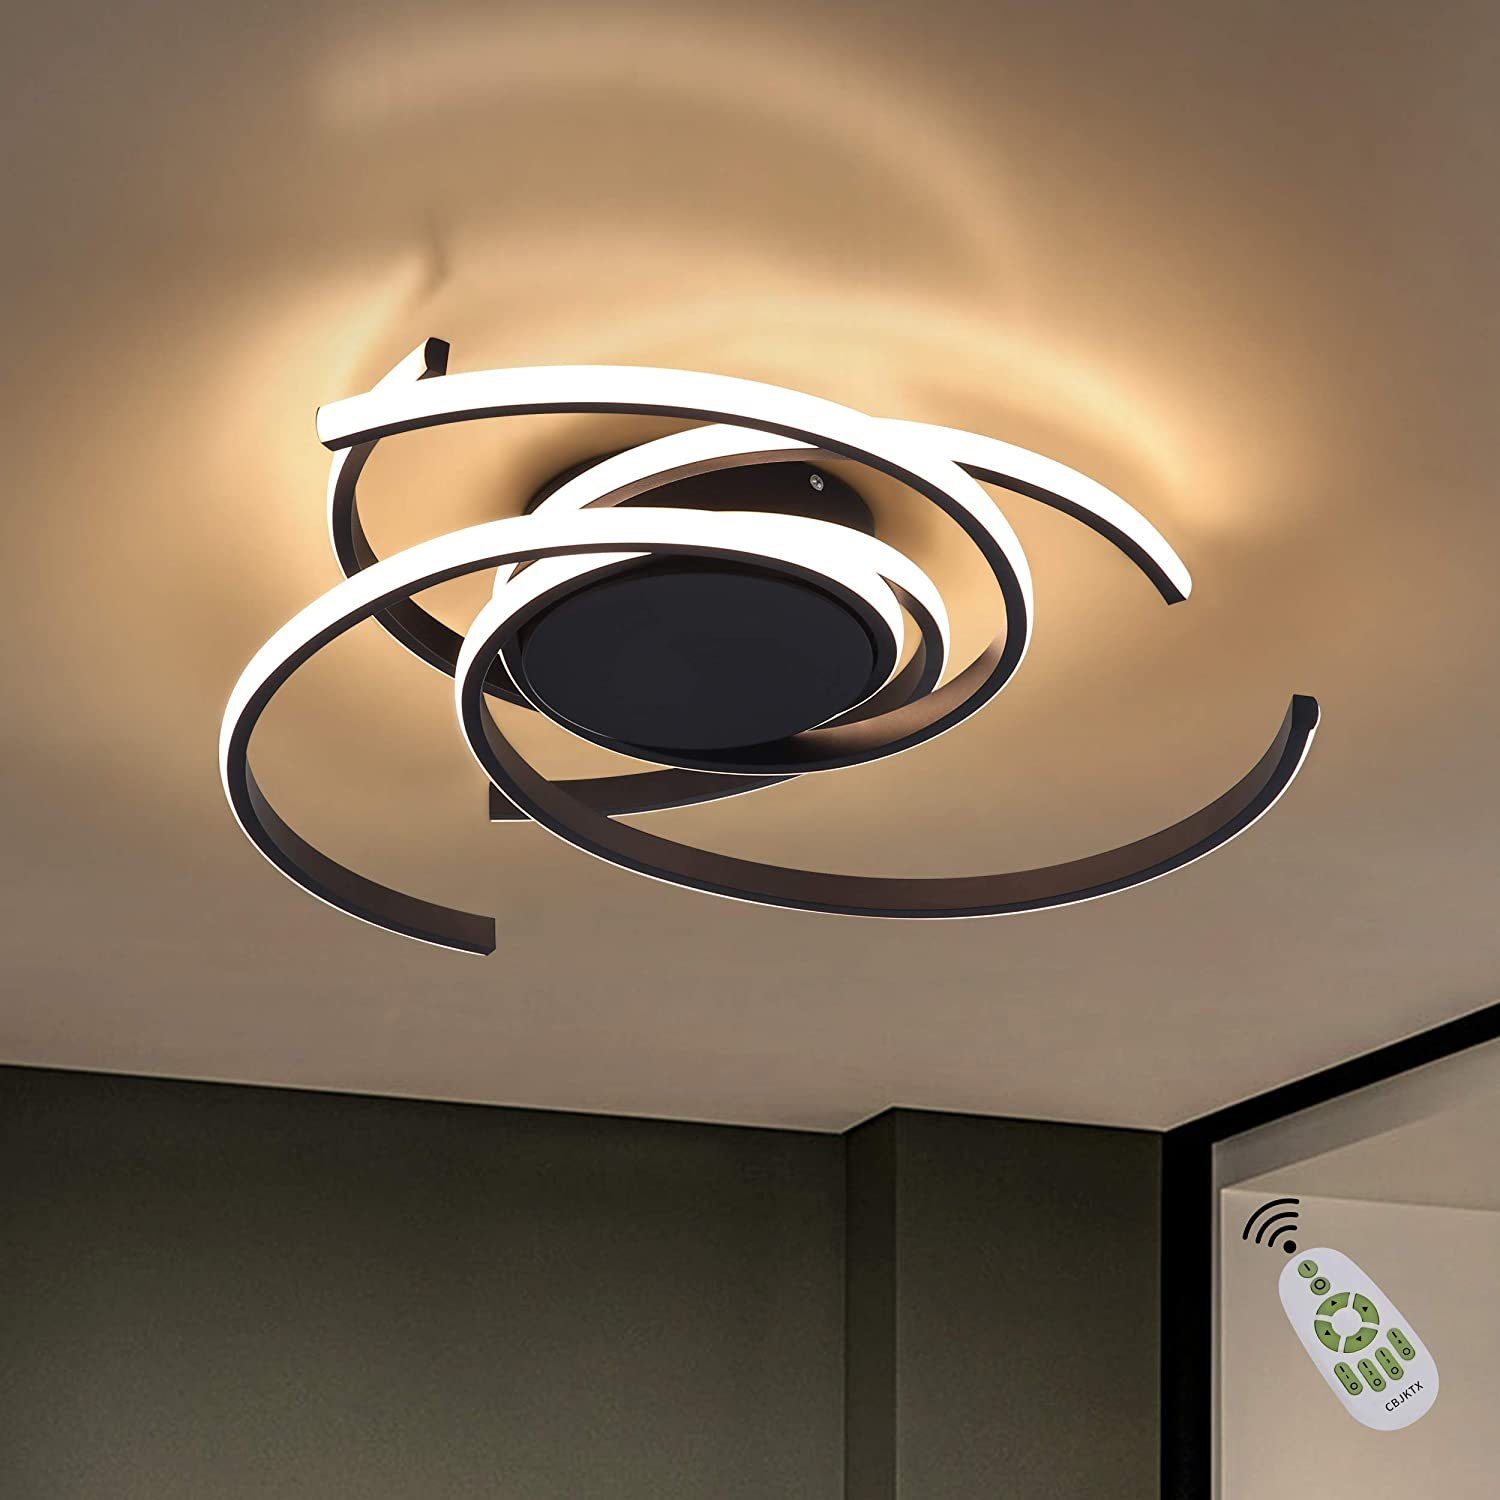 LED Decken Leuchte dimmbar chrom Spirale Flur Küchen Beleuchtung Design Lampe 